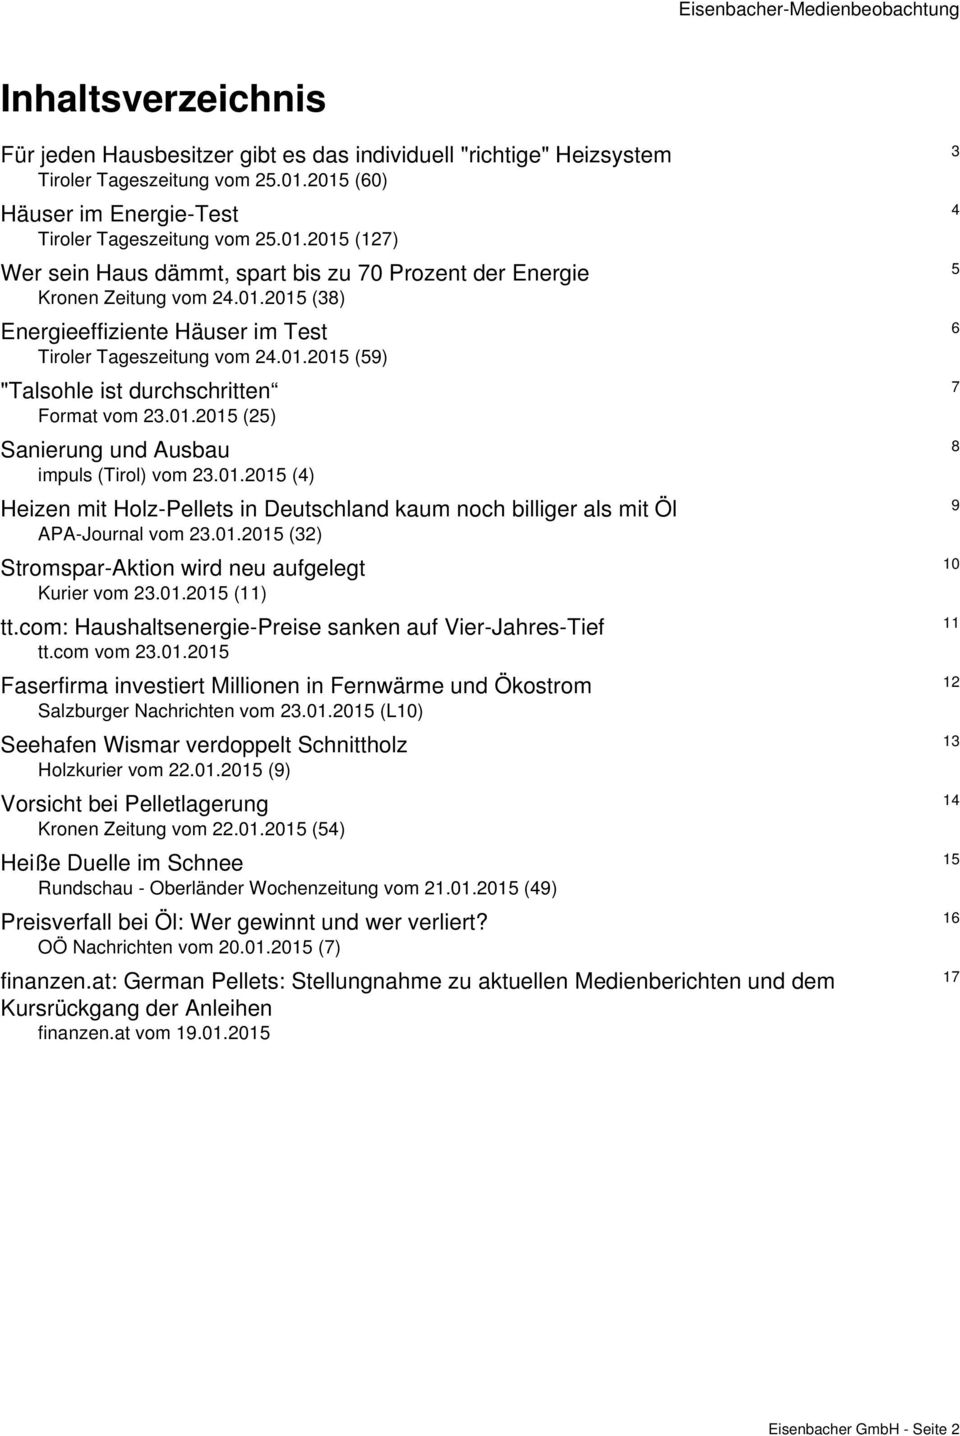 01.2015 (59) 7 "Talsohle ist durchschritten Format vom 23.01.2015 (25) 8 Sanierung und Ausbau impuls (Tirol) vom 23.01.2015 (4) 9 Heizen mit Holz-Pellets in Deutschland kaum noch billiger als mit Öl APA-Journal vom 23.